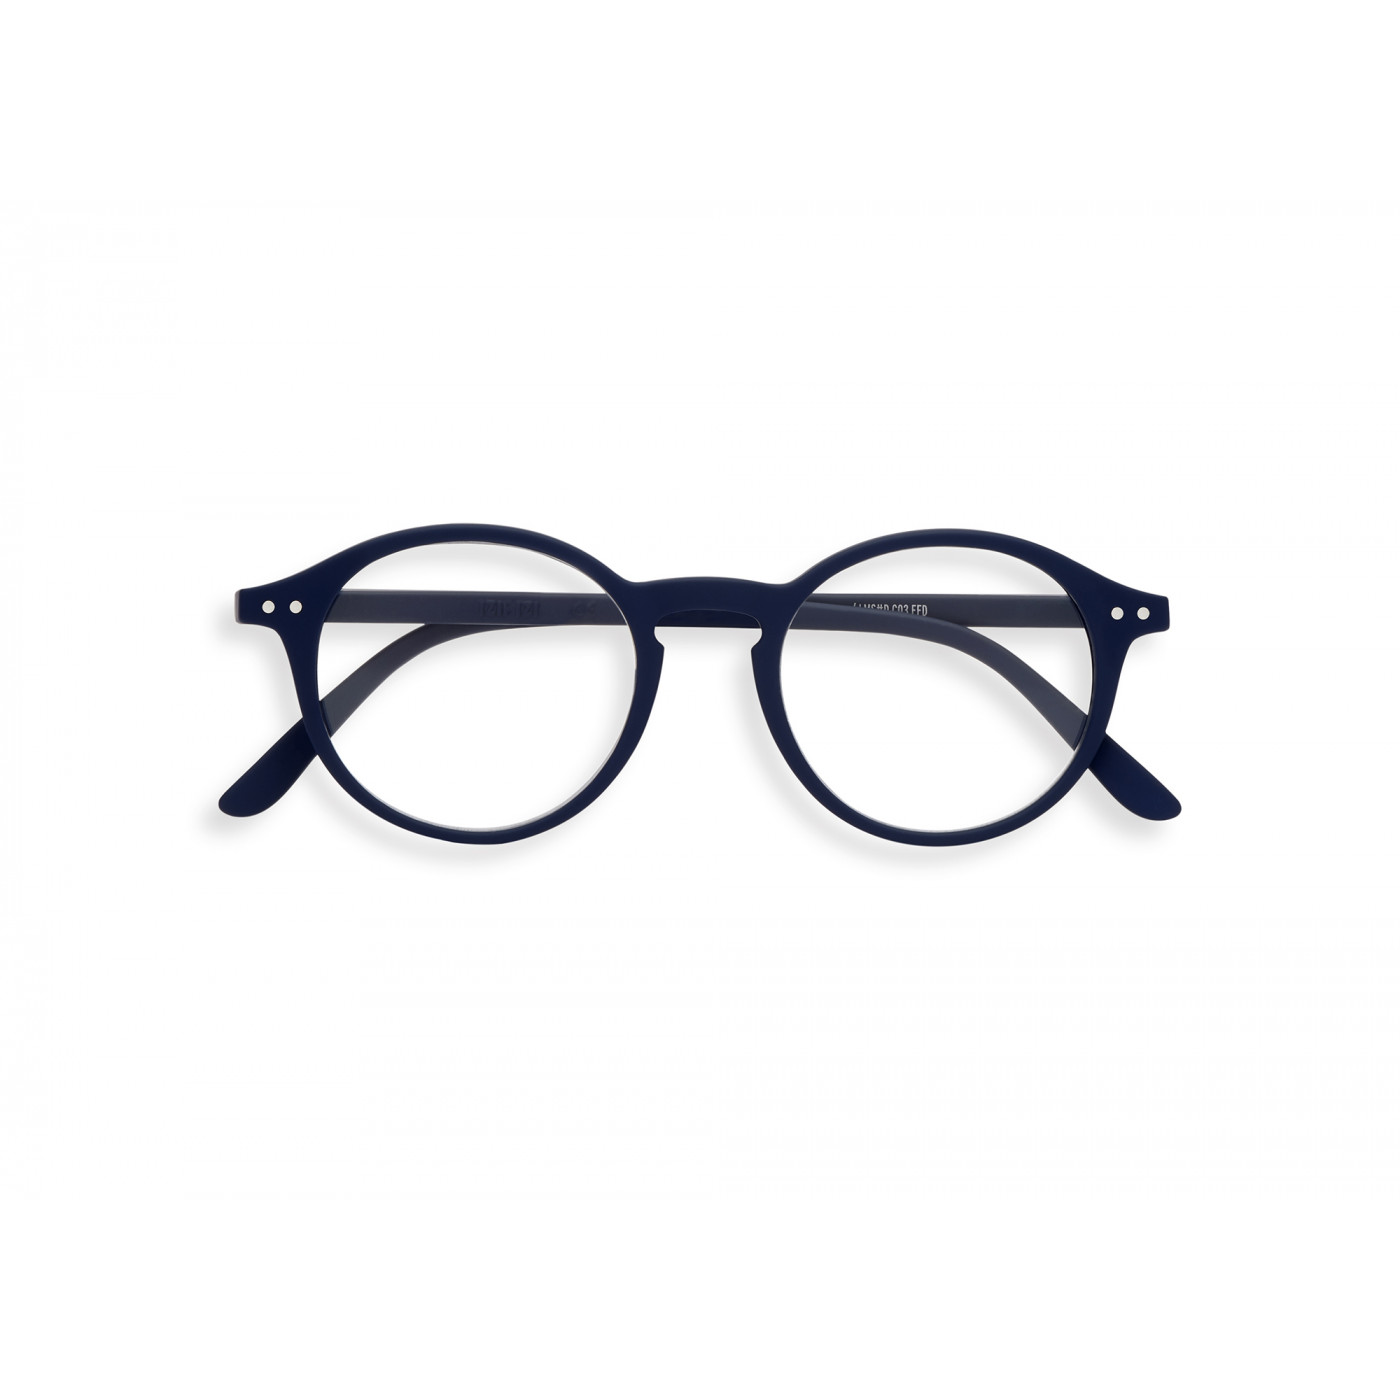 IZIPIZI #D Reading Glasses - Navy Blue